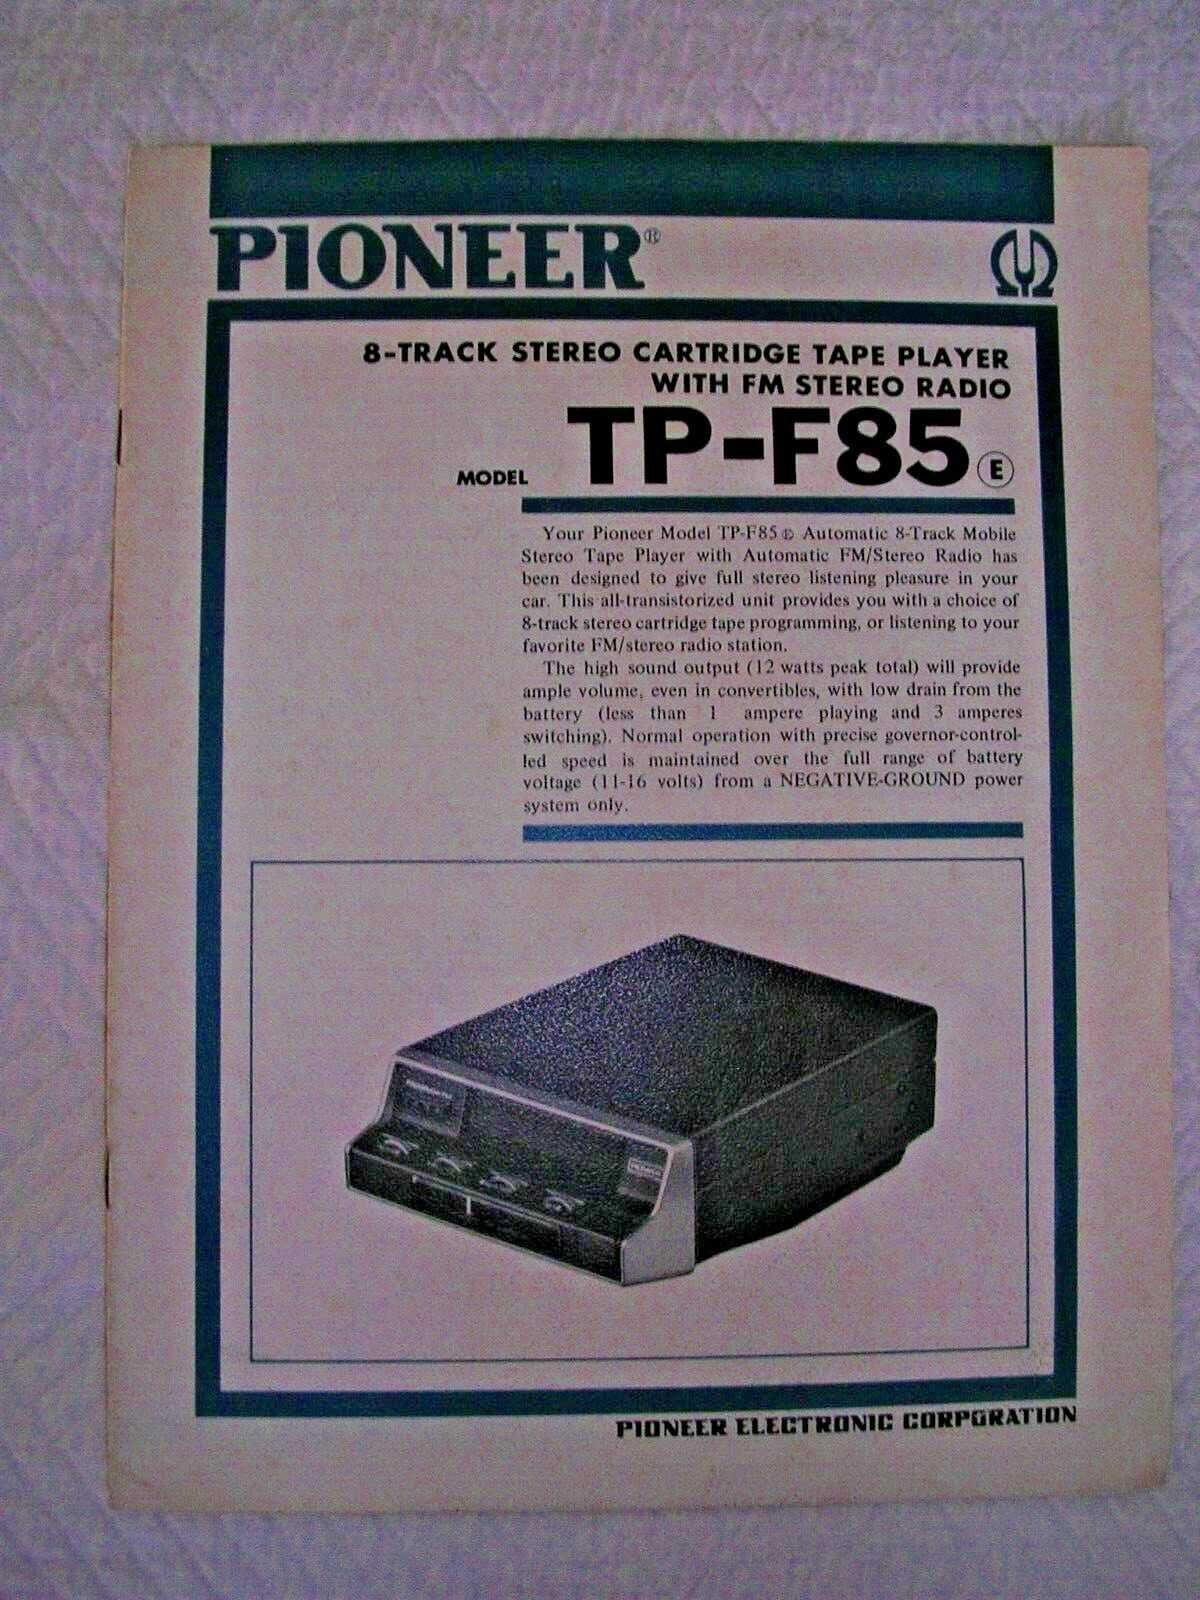 Auto rádio pioneer TP-F85. O primeiro modelo da marca! Peça de museu.